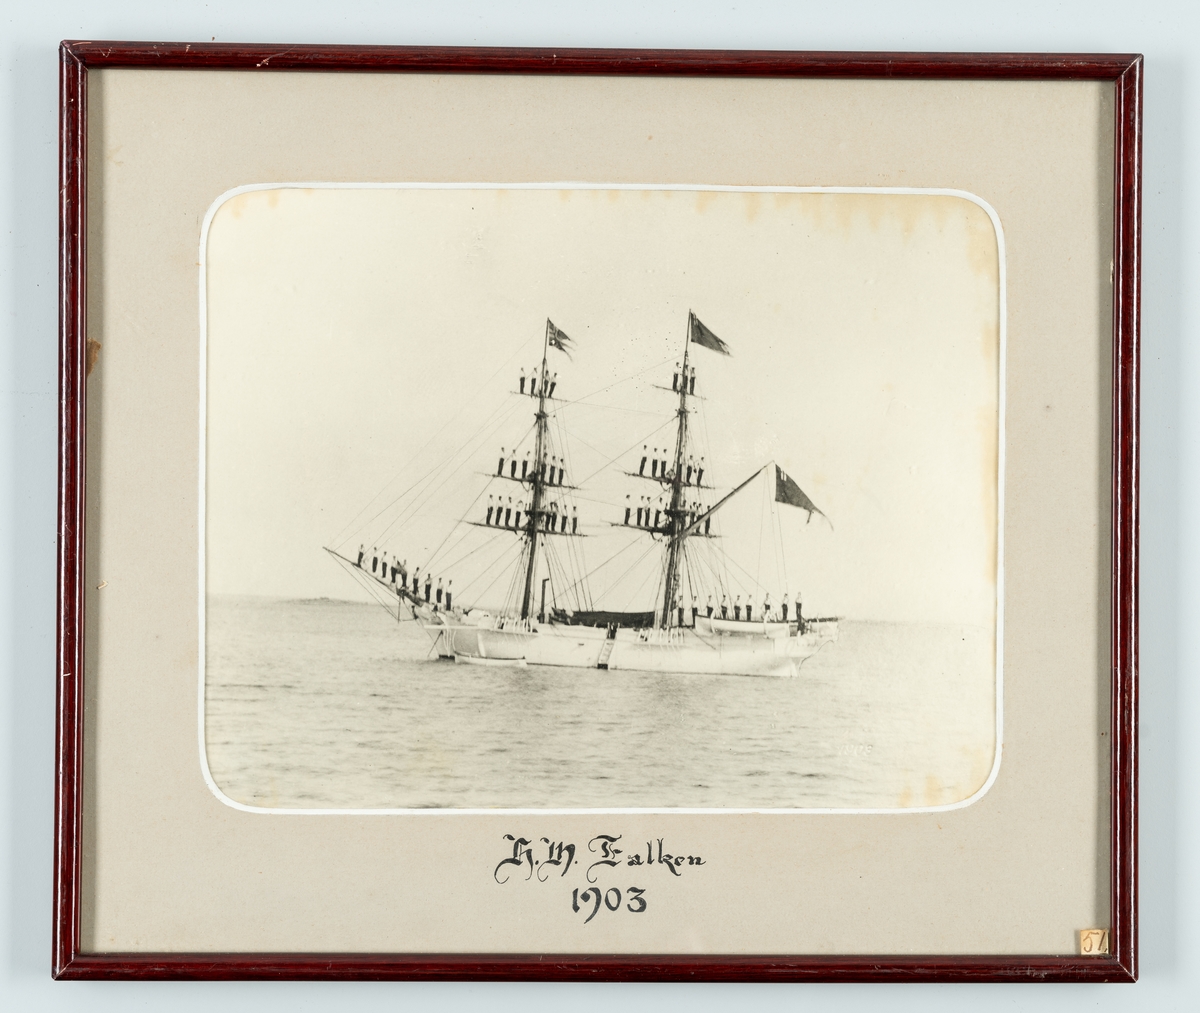 Sexkanoners brigg från 1877 som blev del av flottans skeppsgosseexpeditioner. Hon råkade ut för två allvarliga grundstötningar. 1943 såldes hon och slutade sina dagar som vrak utanför Chiles kust.